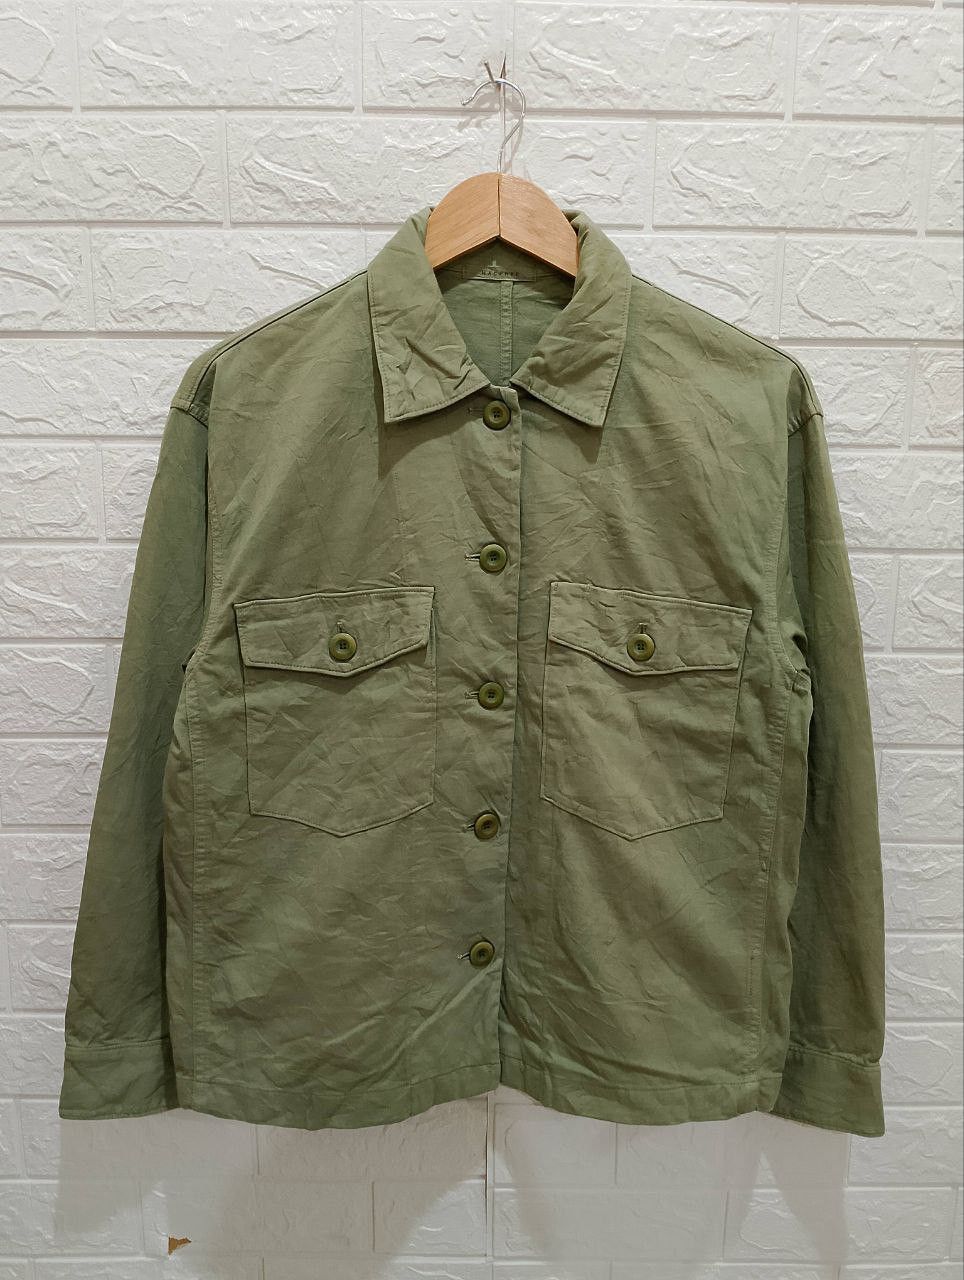 Archival Clothing - Macphee Military OG-107 Design Long Sleeve Shirt Jacket - 2